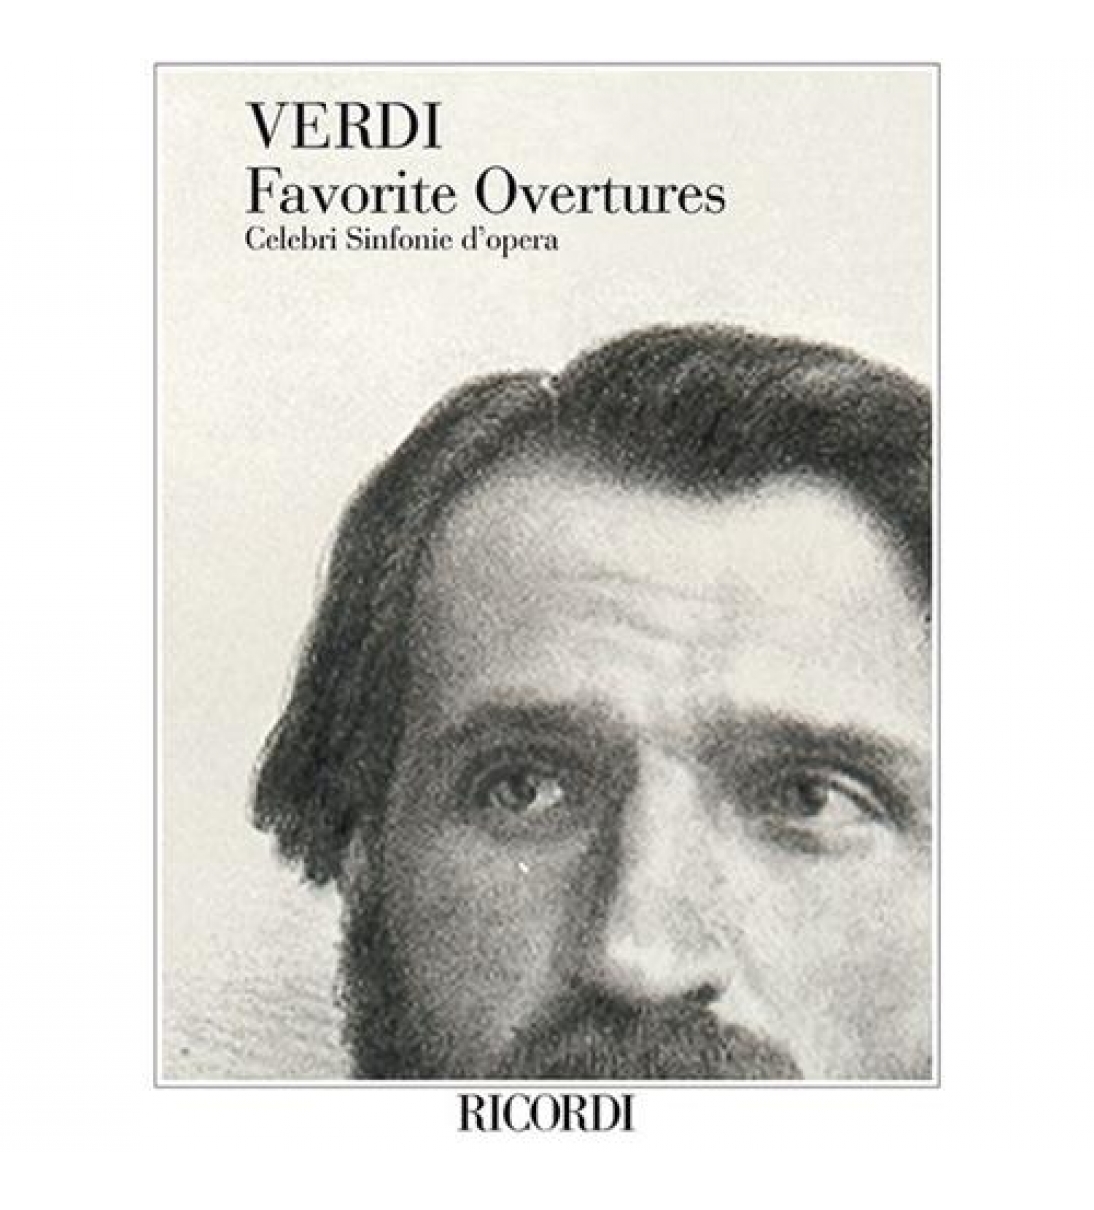 Favorite overtures | Verdi G.